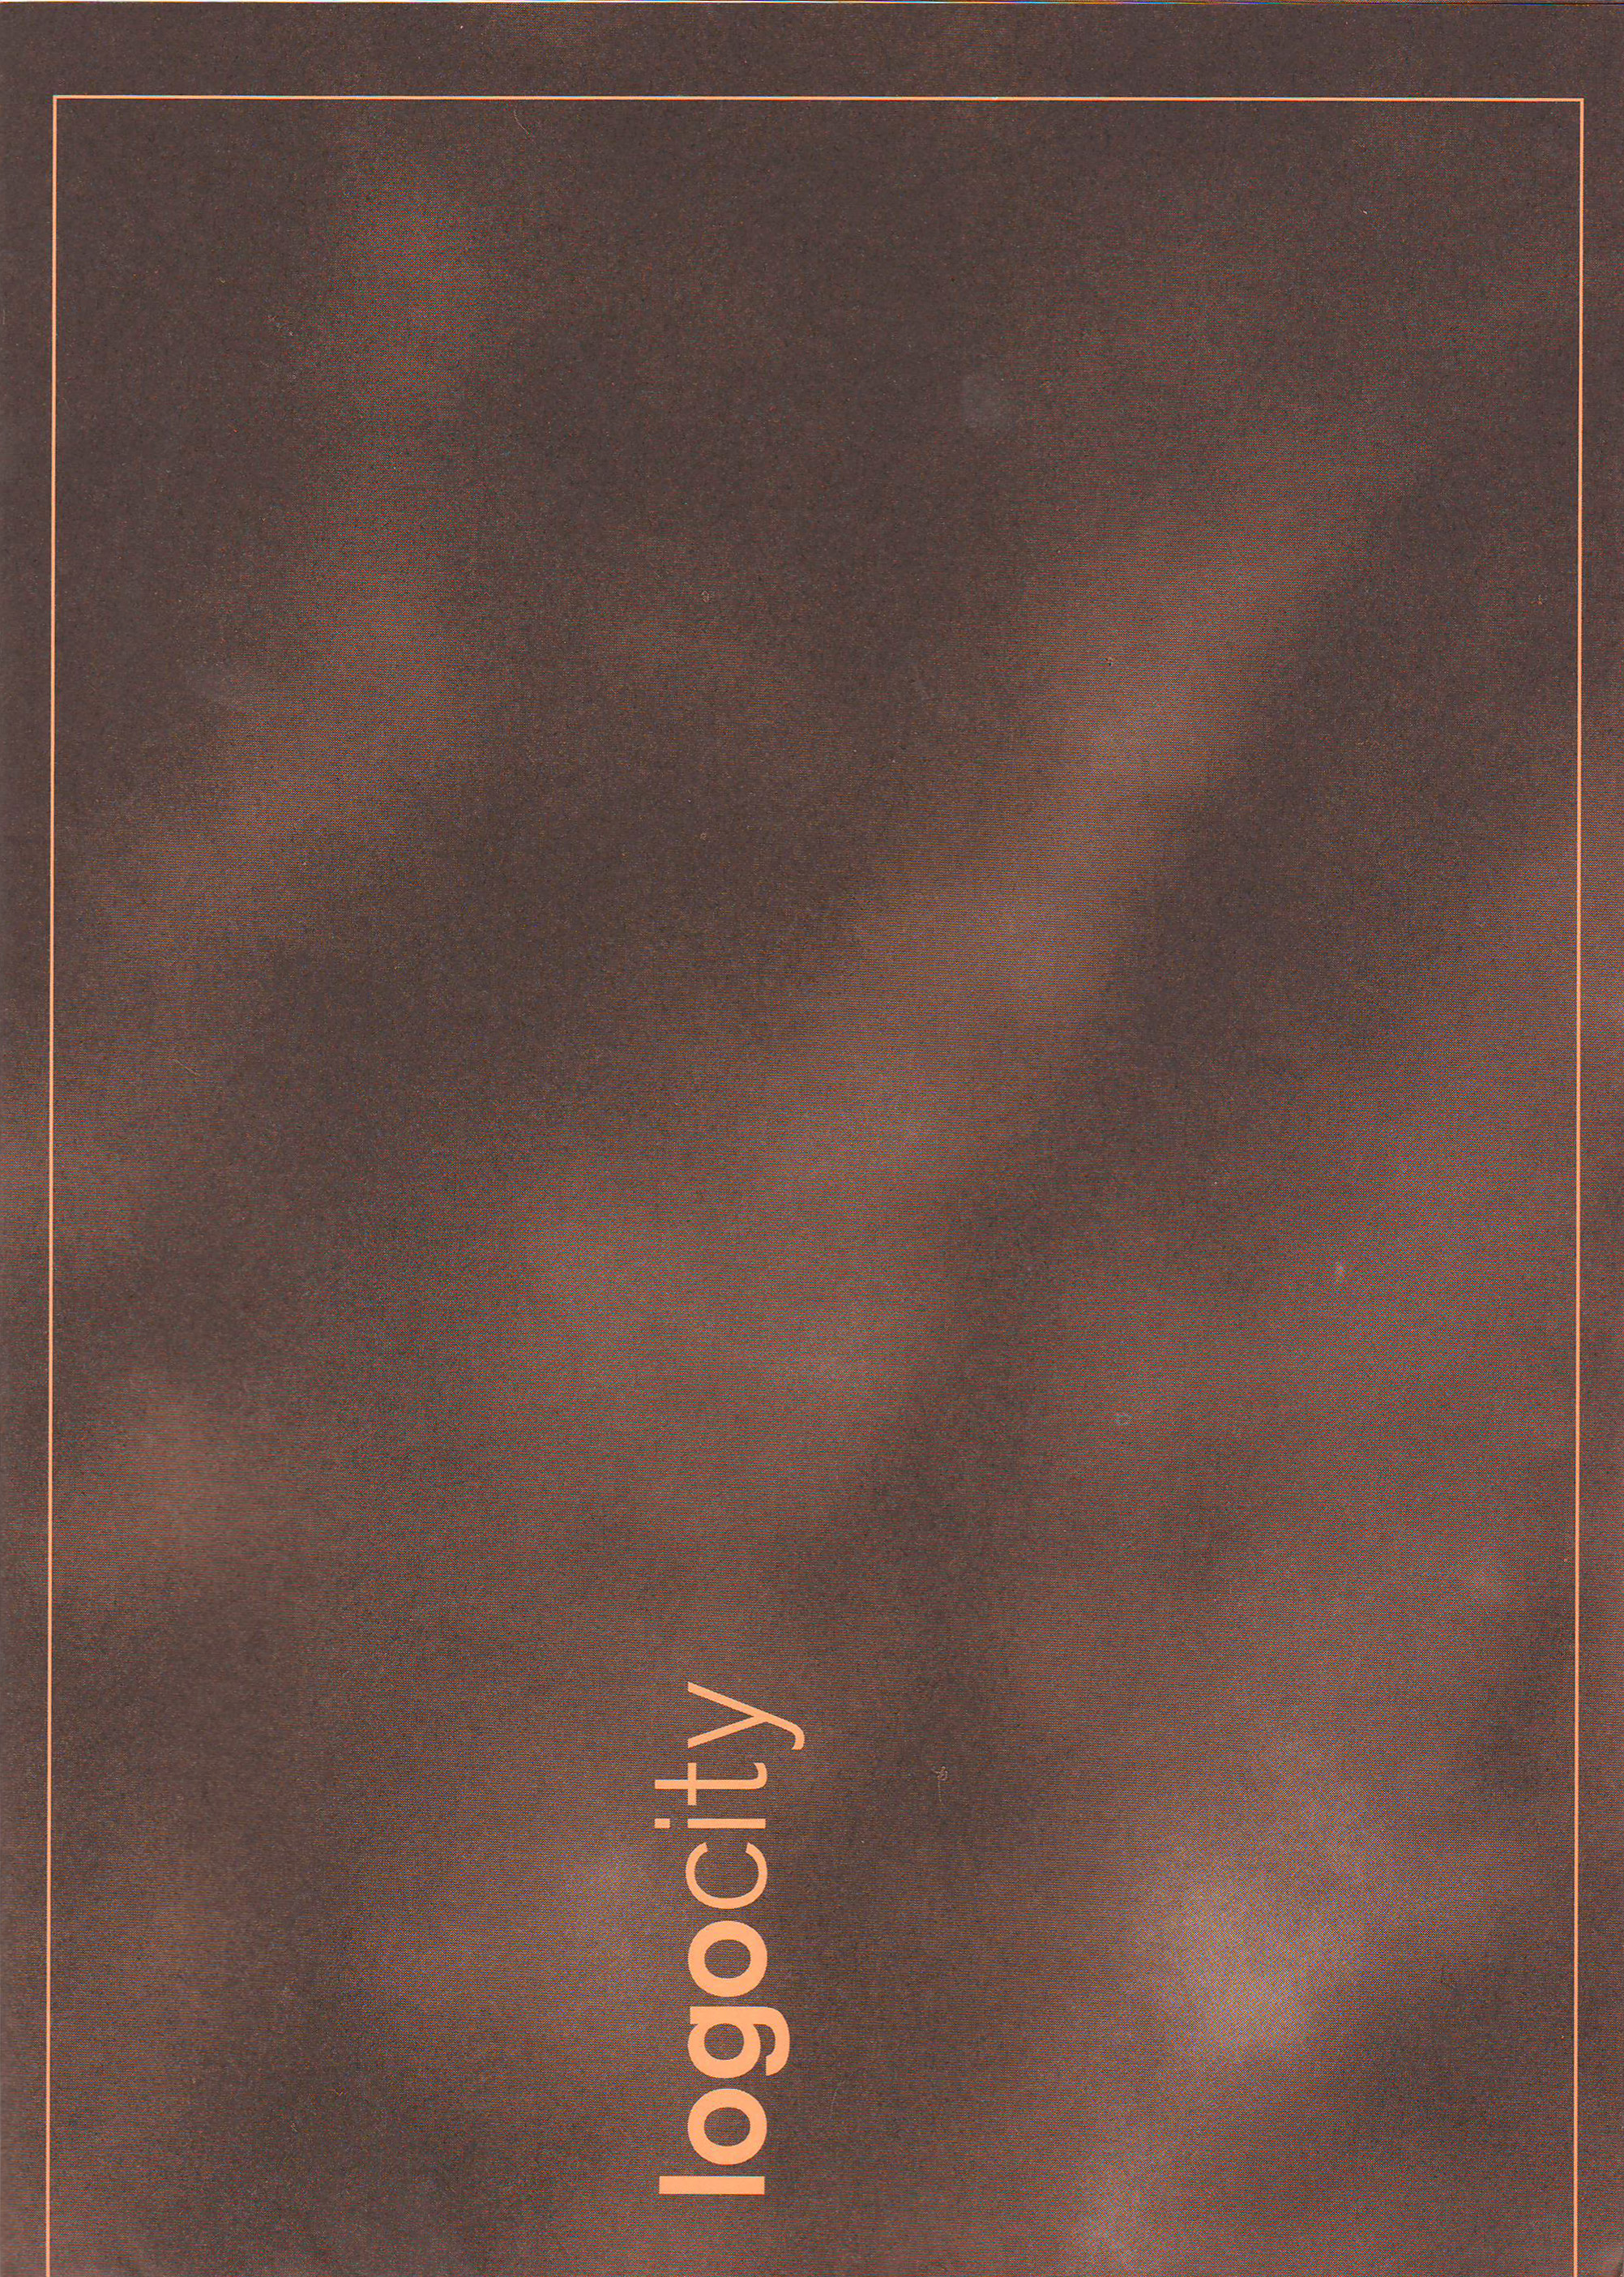 cover of Logocity brochure